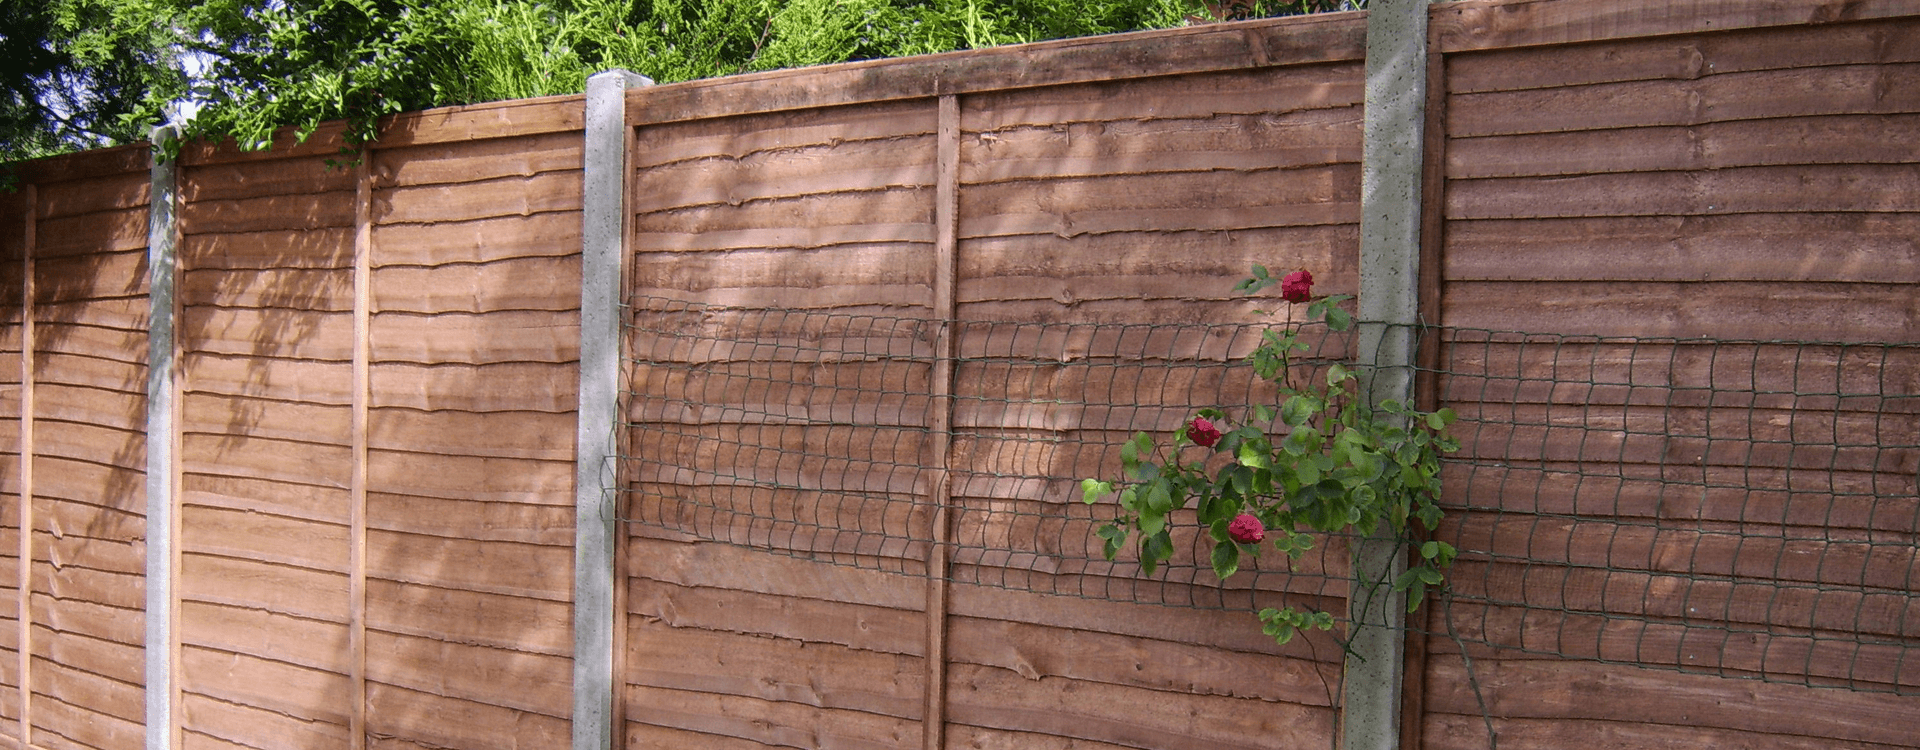 Garden fence